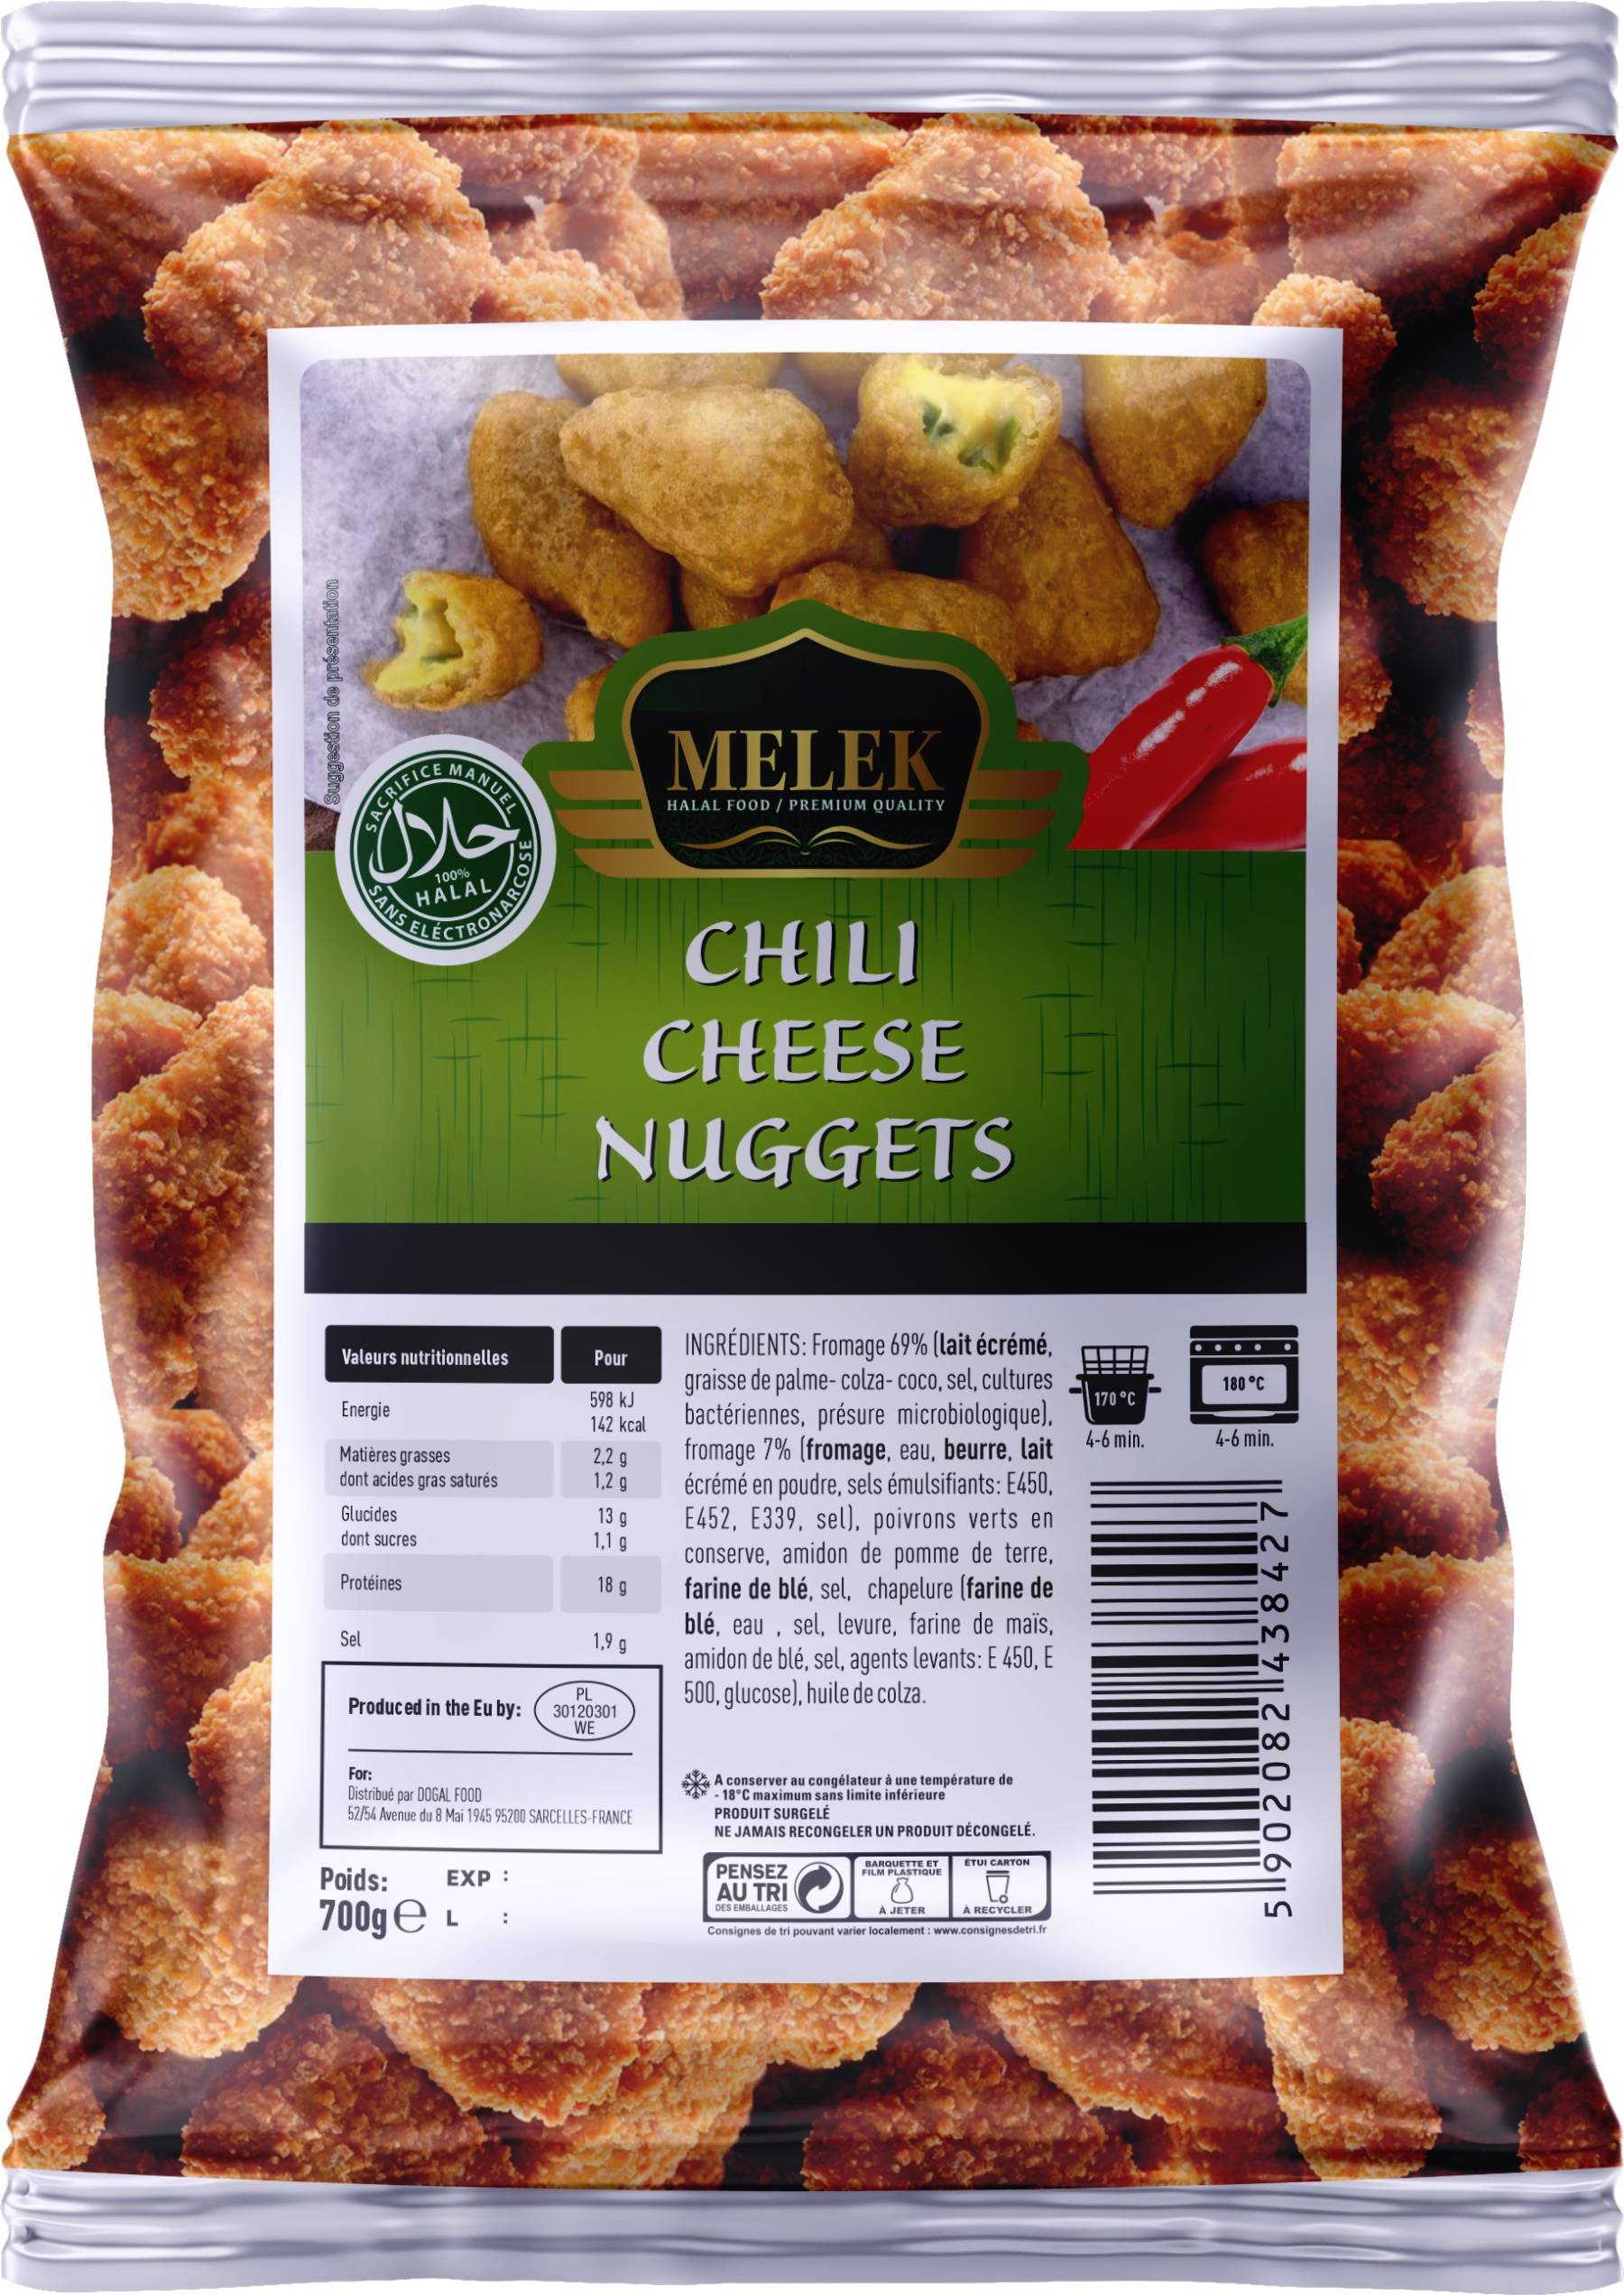 E631 : Melek Chili cheese nuggets 700gr ( 11pc par colis )